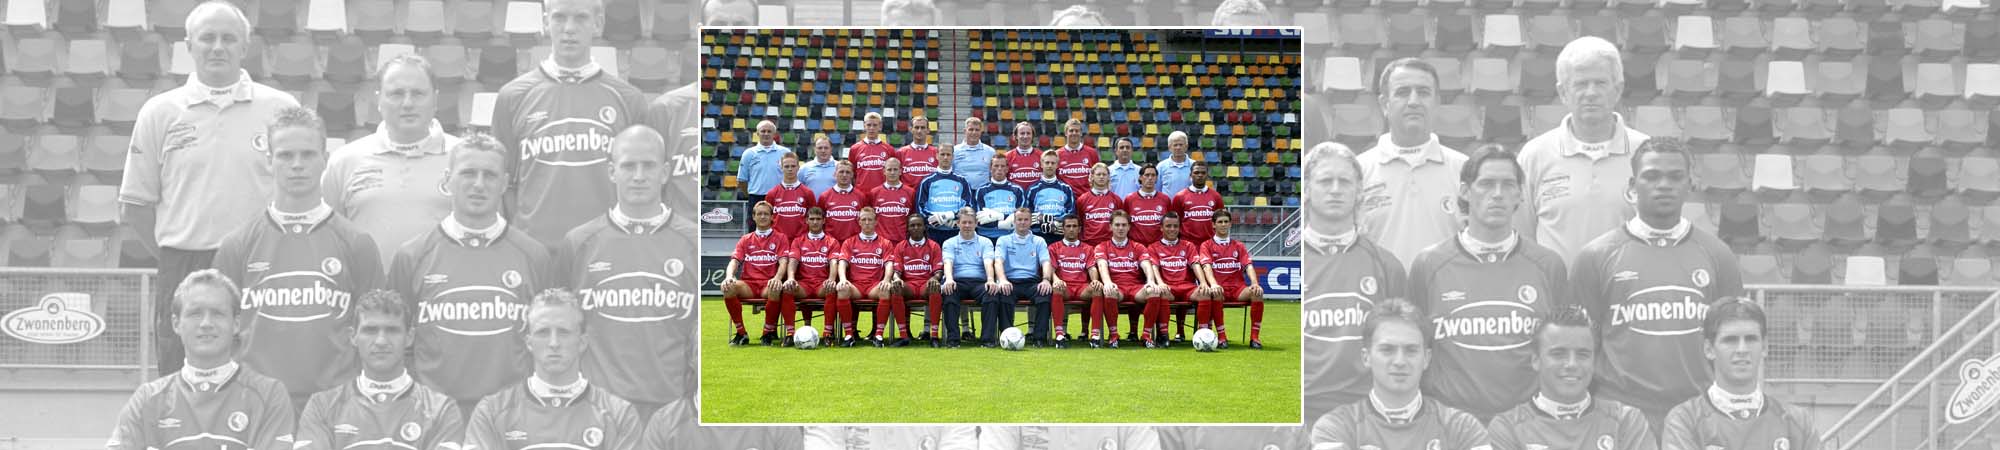 FC Twente seizoen 2003/2004